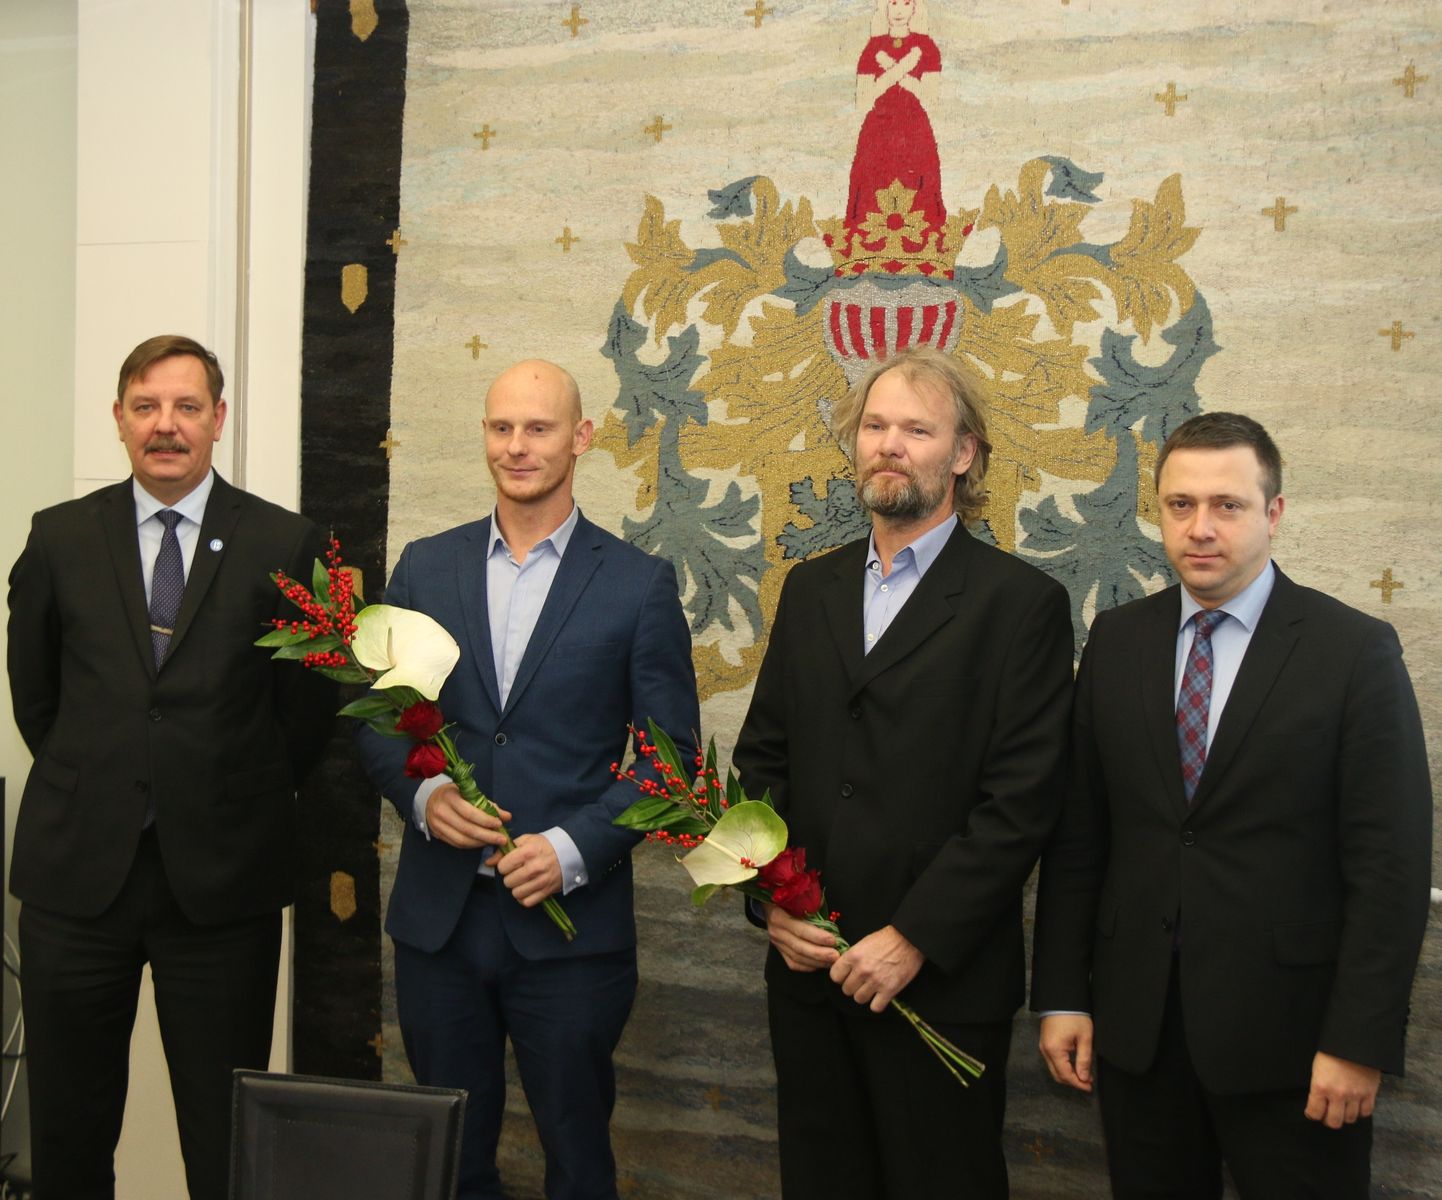 Auhinnatud veemotosportlased koos Tallinna linnavalitsuse esindajatega